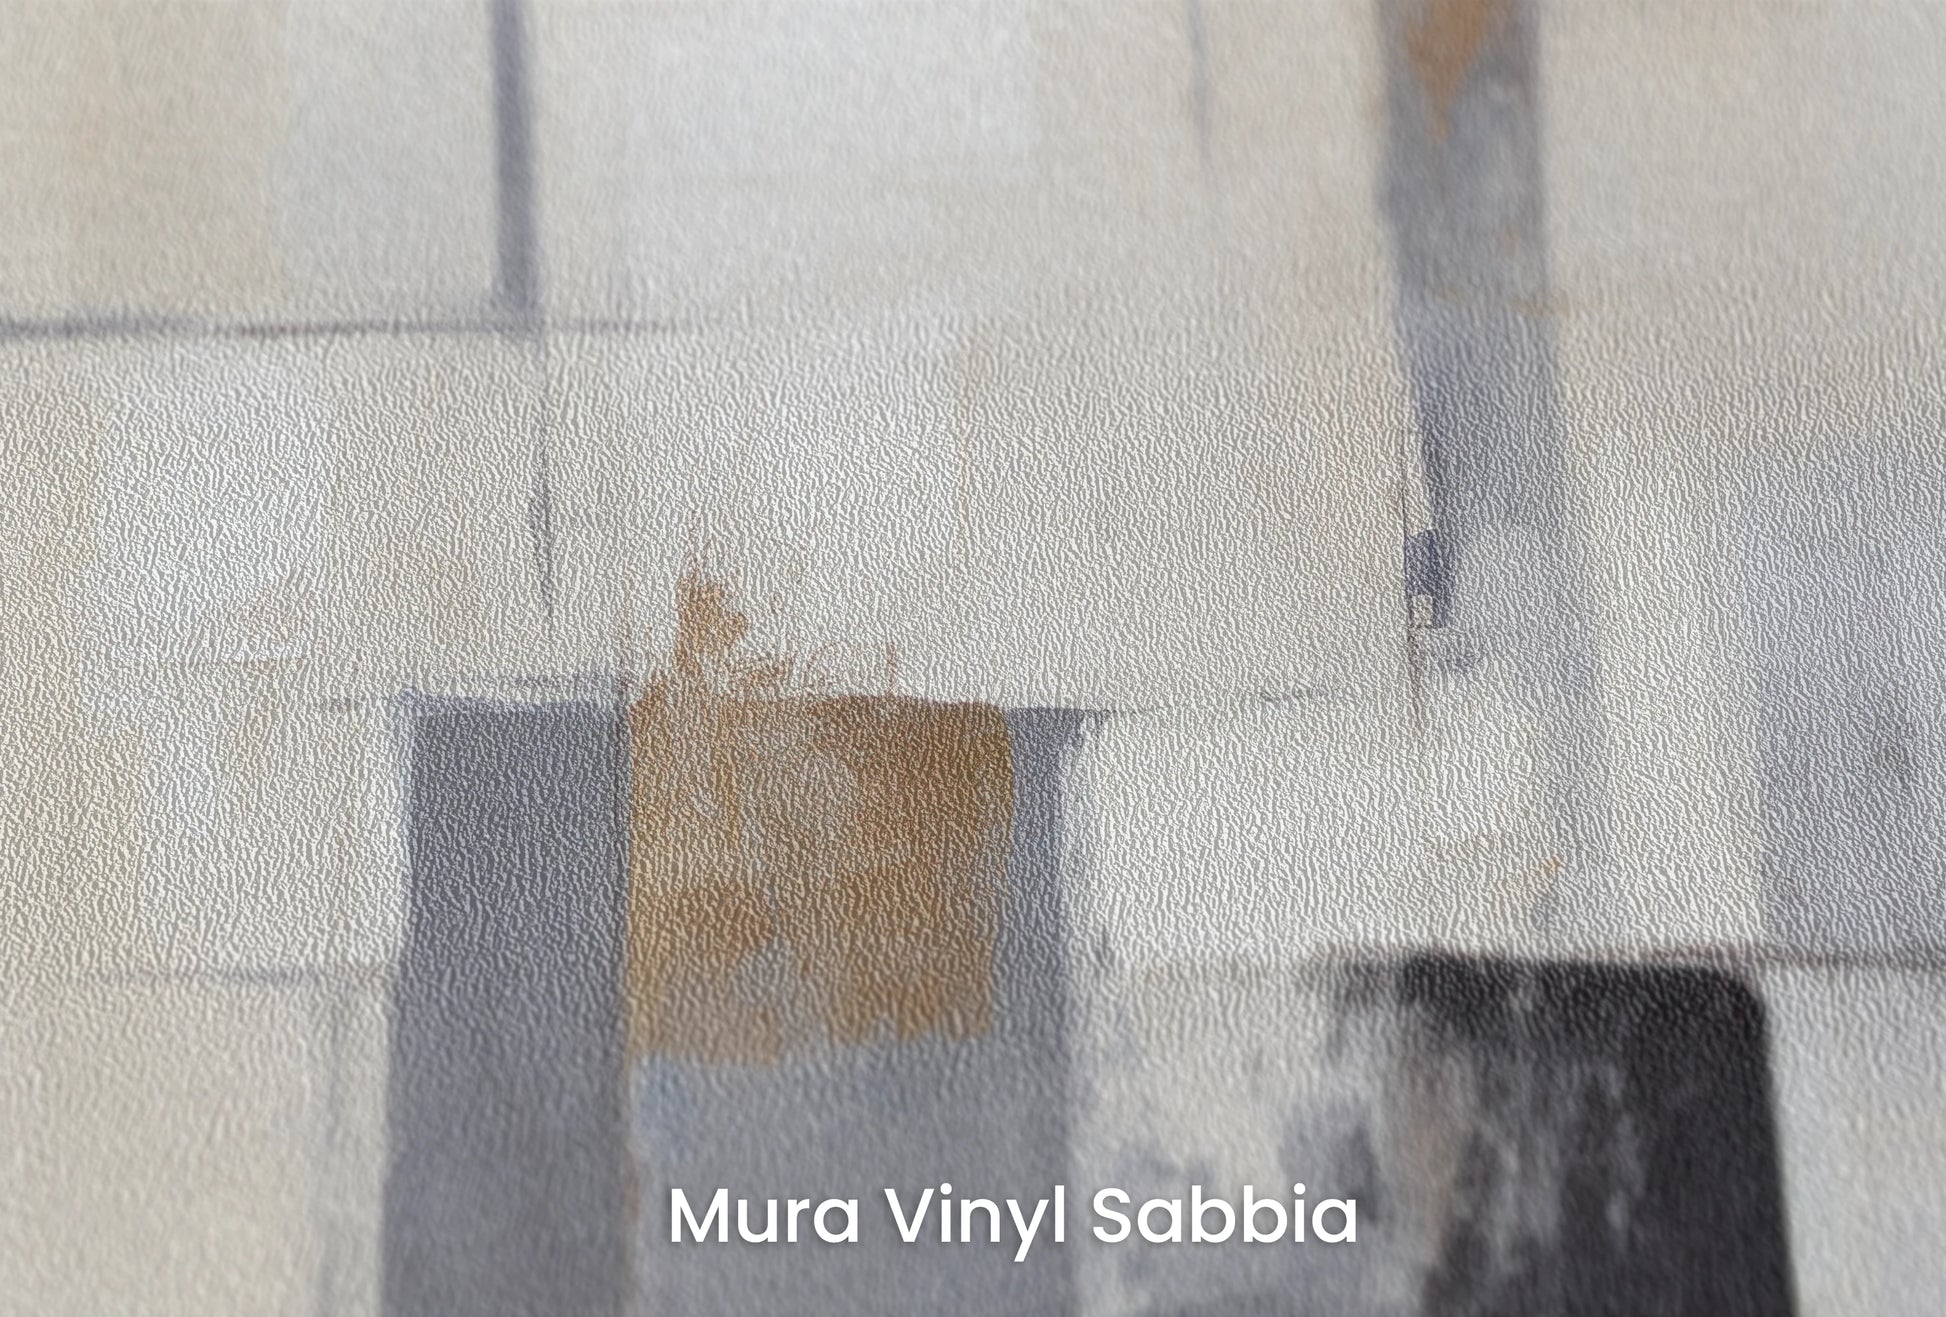 Zbliżenie na artystyczną fototapetę o nazwie Navy Accents na podłożu Mura Vinyl Sabbia struktura grubego ziarna piasku.